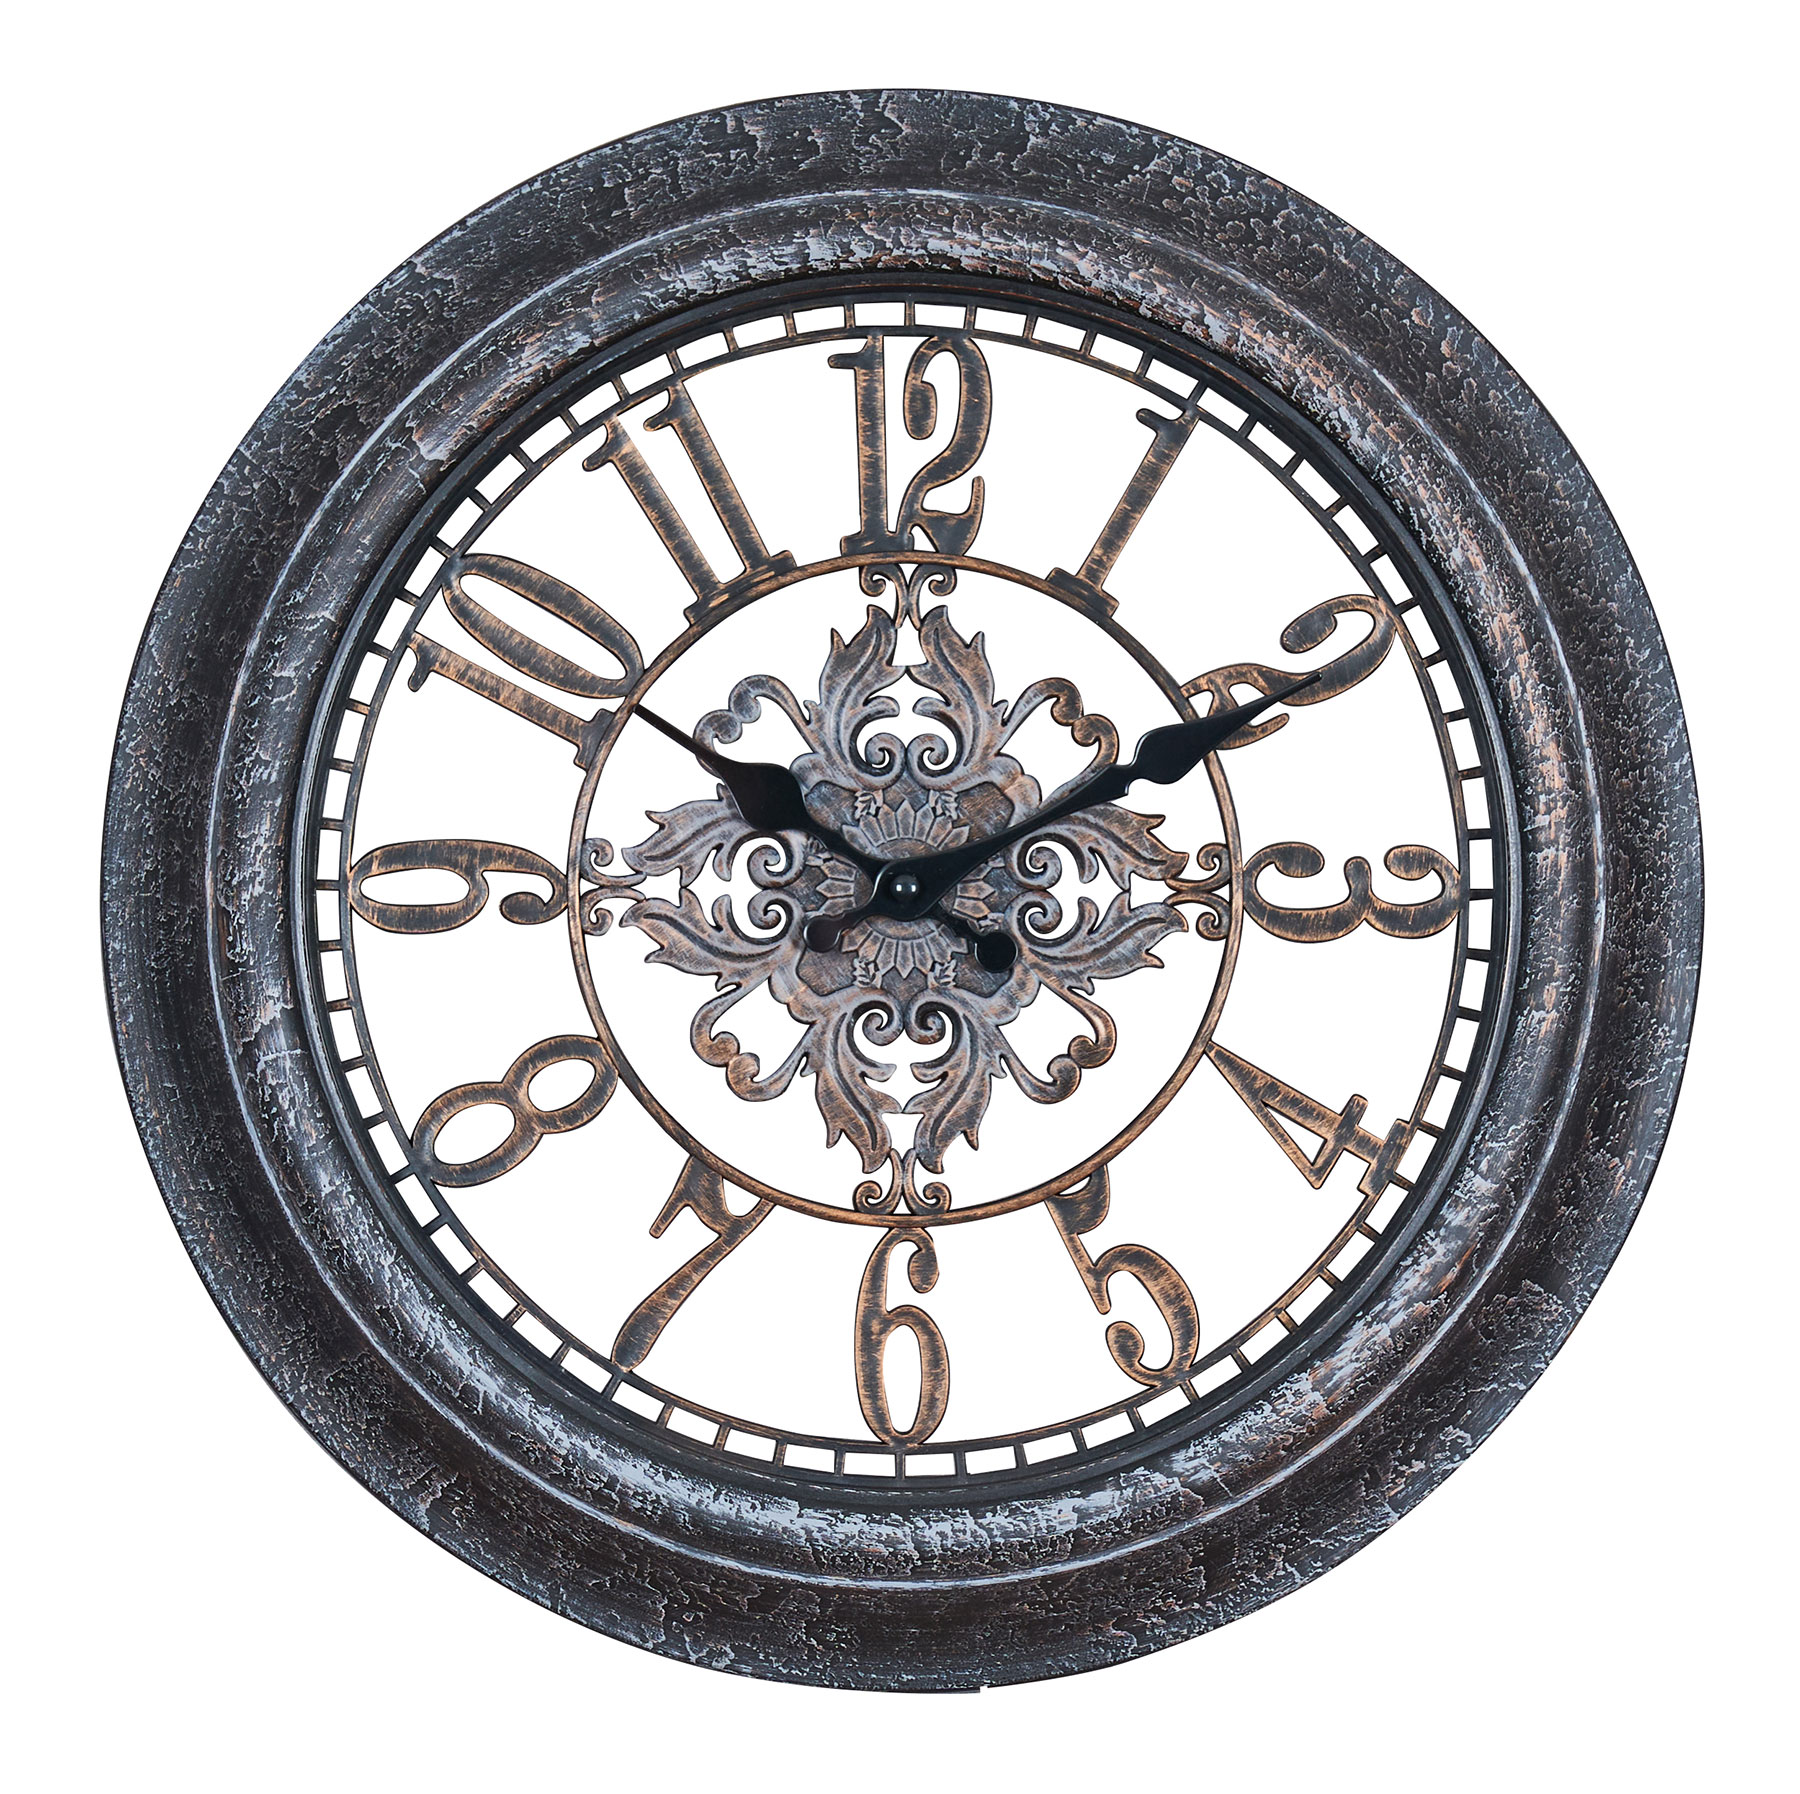 Wanduhr 40x40cm Ornamente Schwarz Kupfer Shabby Chic Vintage Uhr Deko Industrial